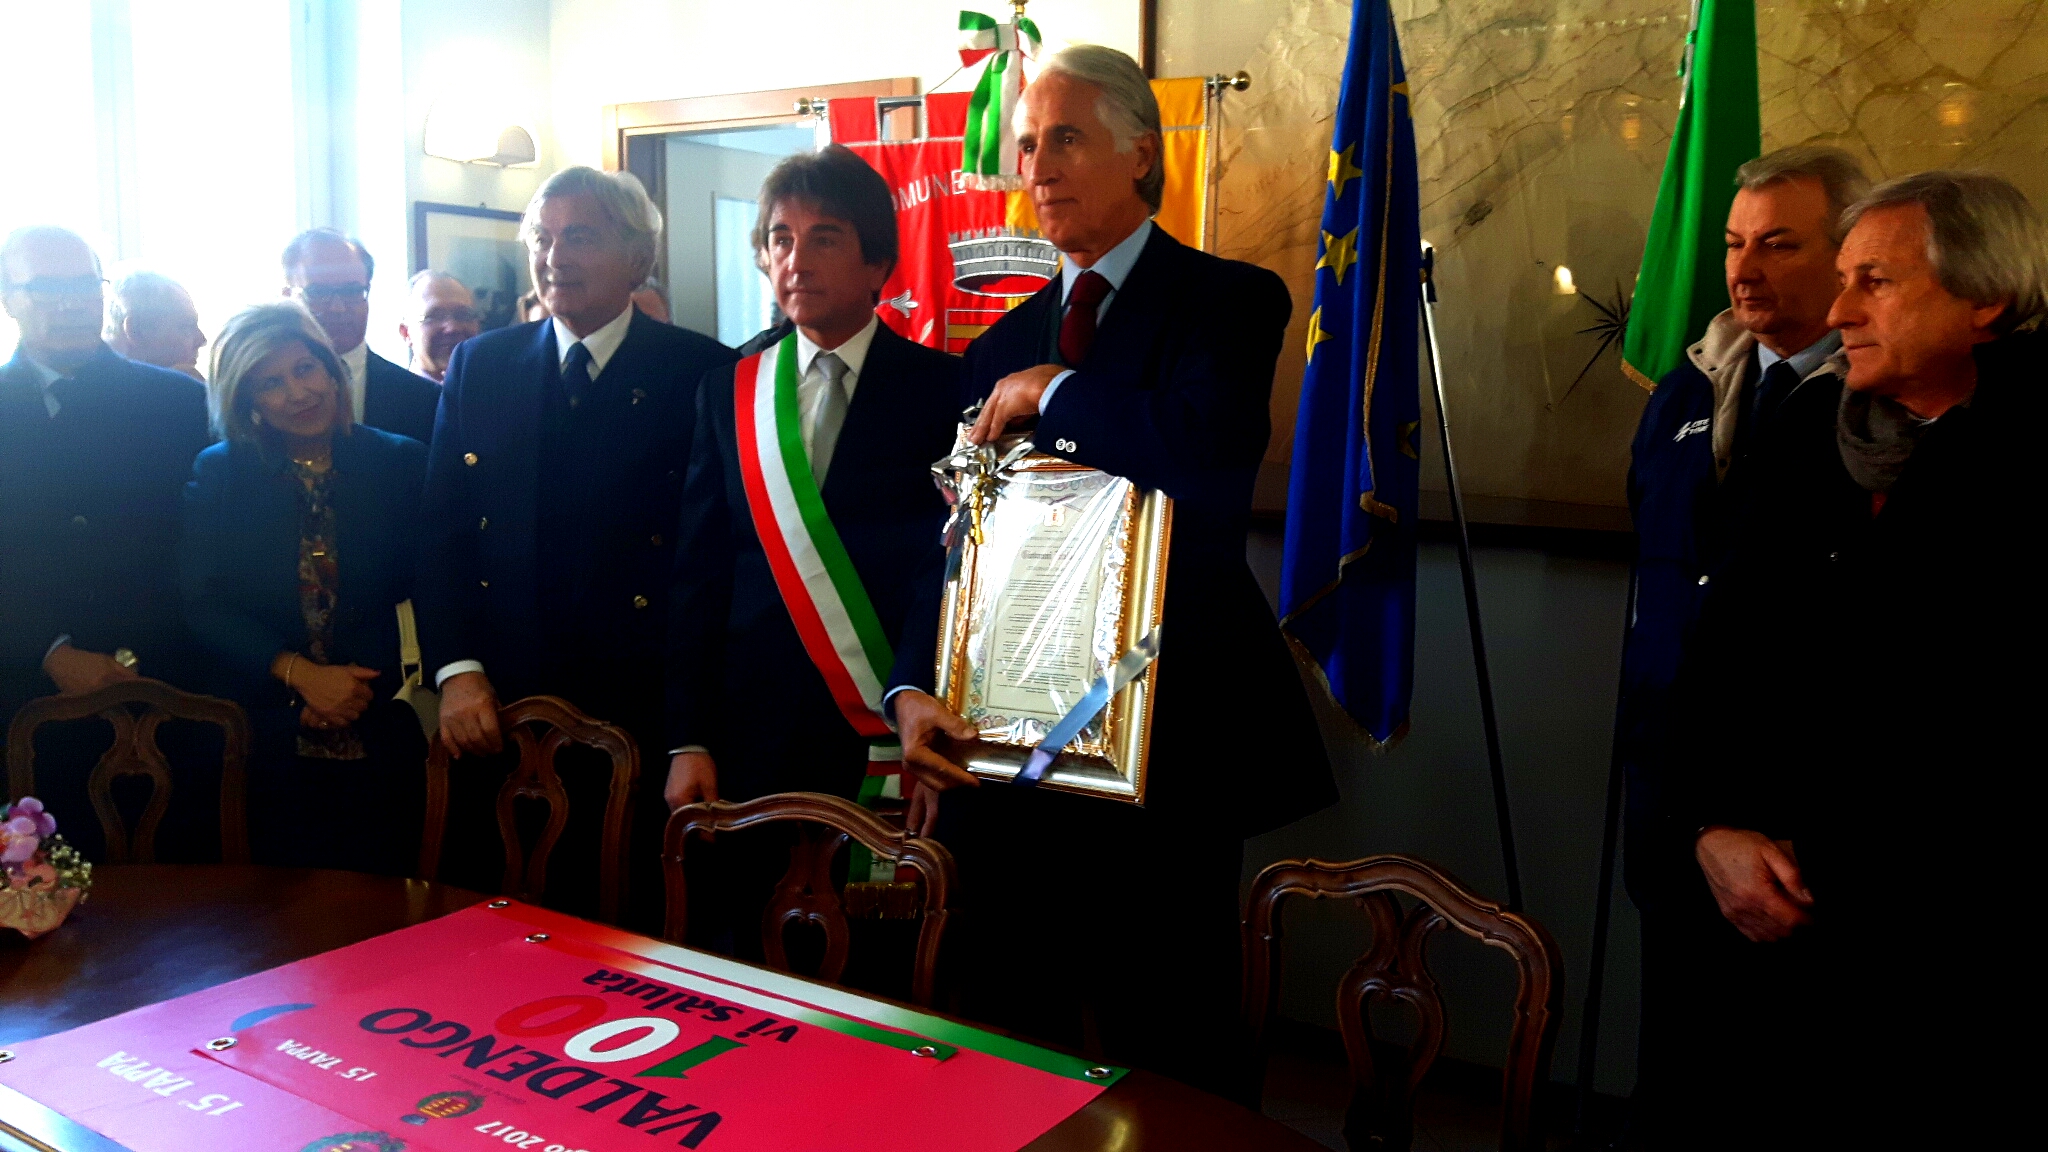 Il Piemonte abbraccia Malagò, nominato cittadino onorario di Valdengo. "Orgoglioso del territorio"